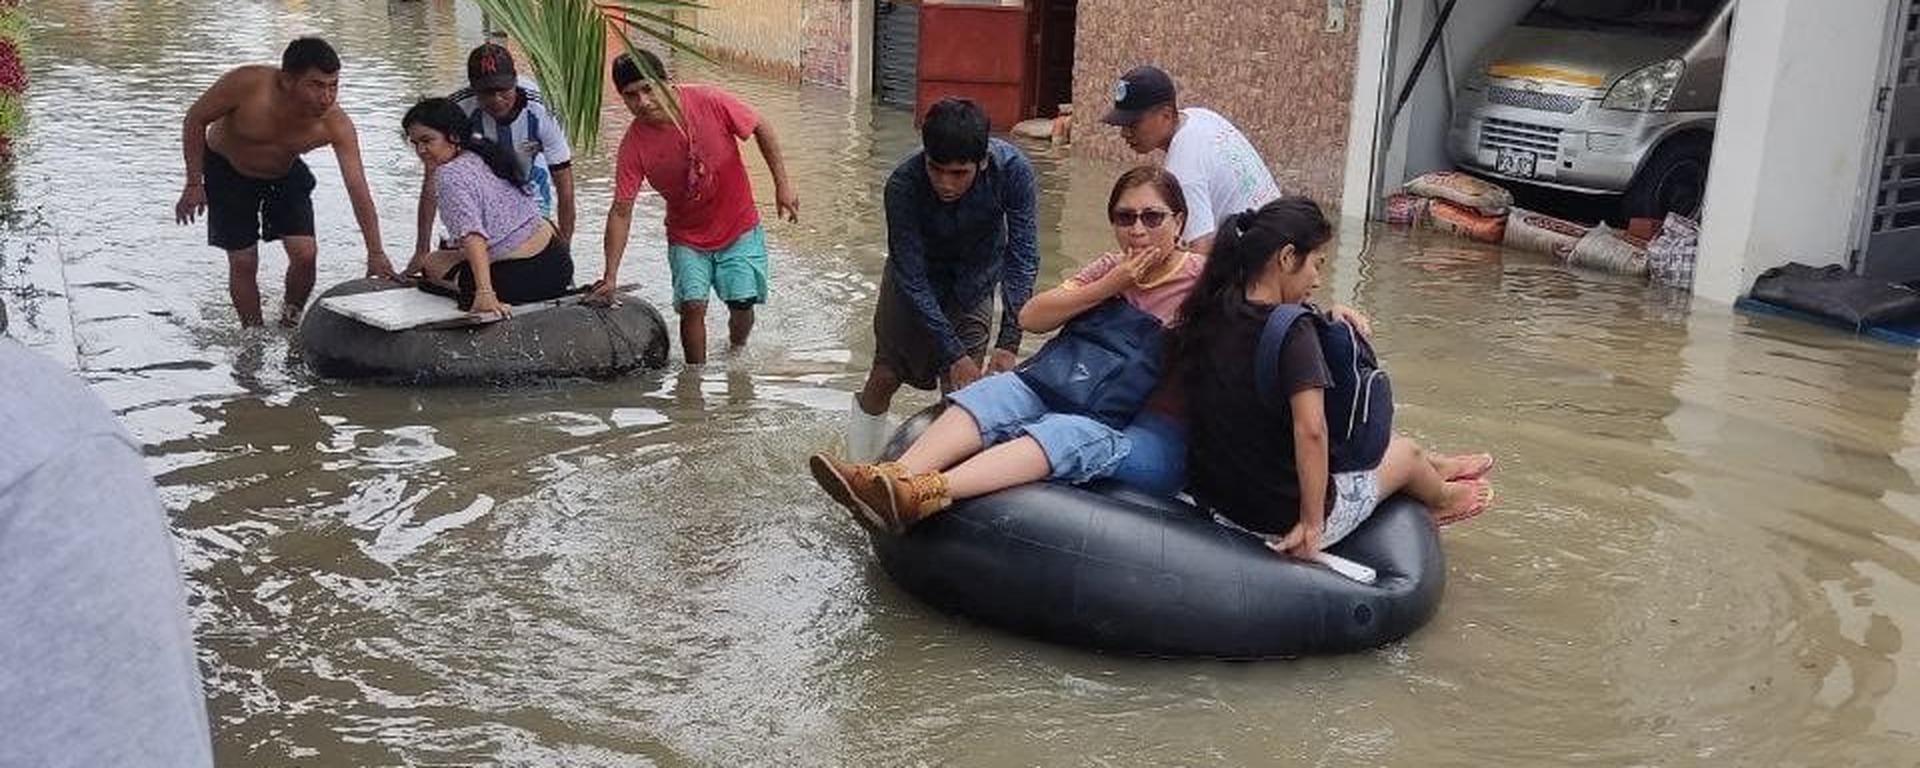 Indignación en Piura: inmobiliaria prometía ser “zona segura” y terminó totalmente inundada